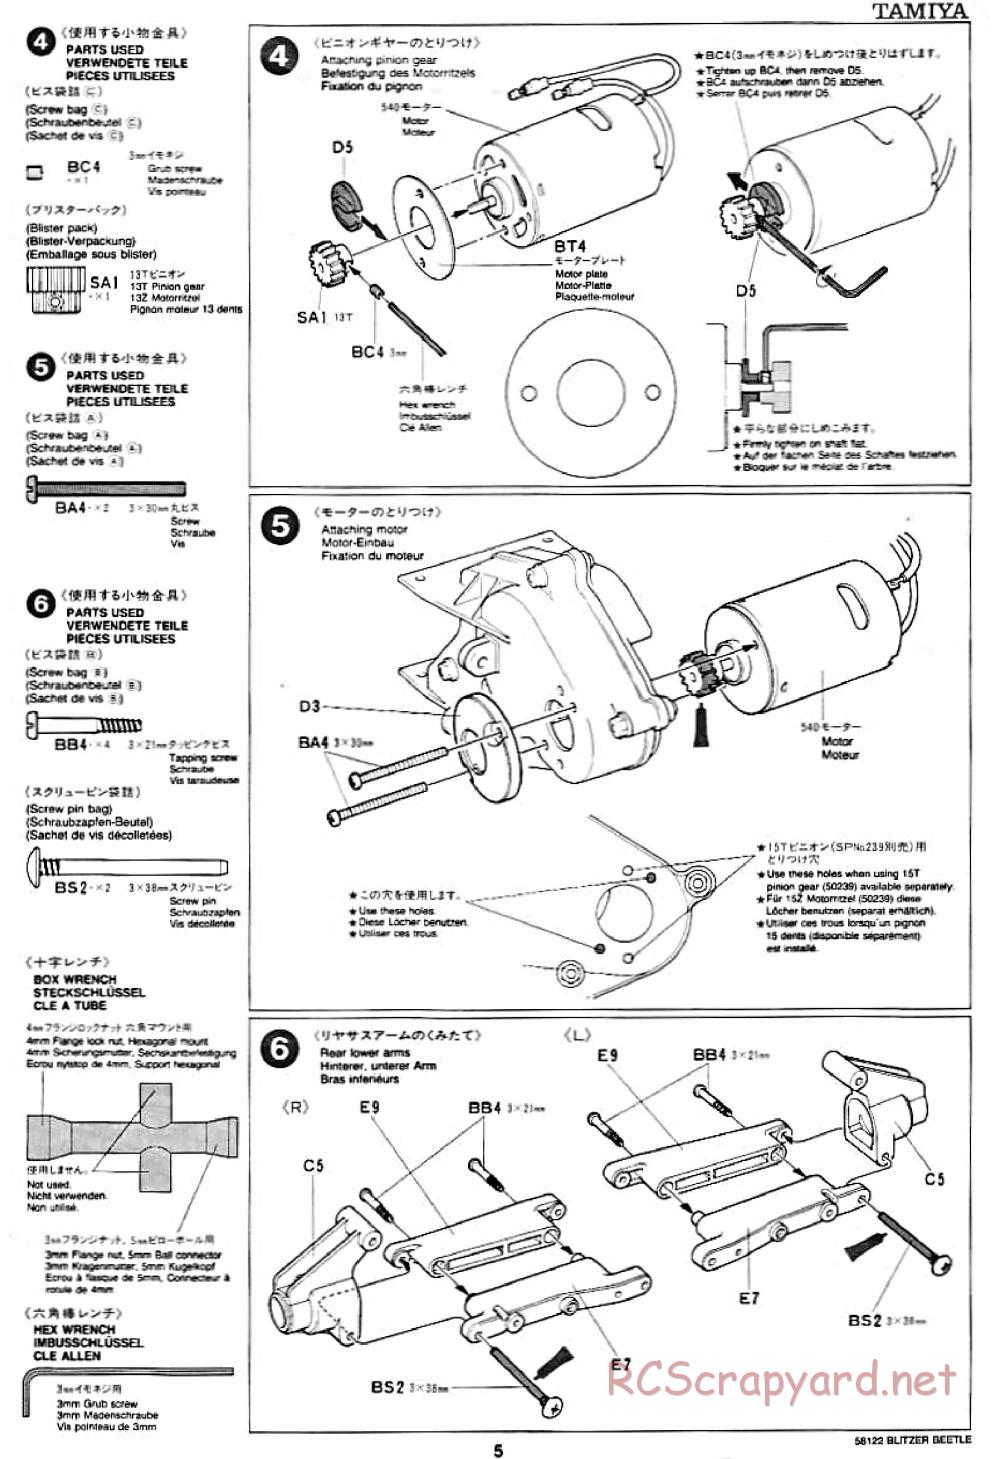 Tamiya - Blitzer Beetle Chassis - Manual - Page 5